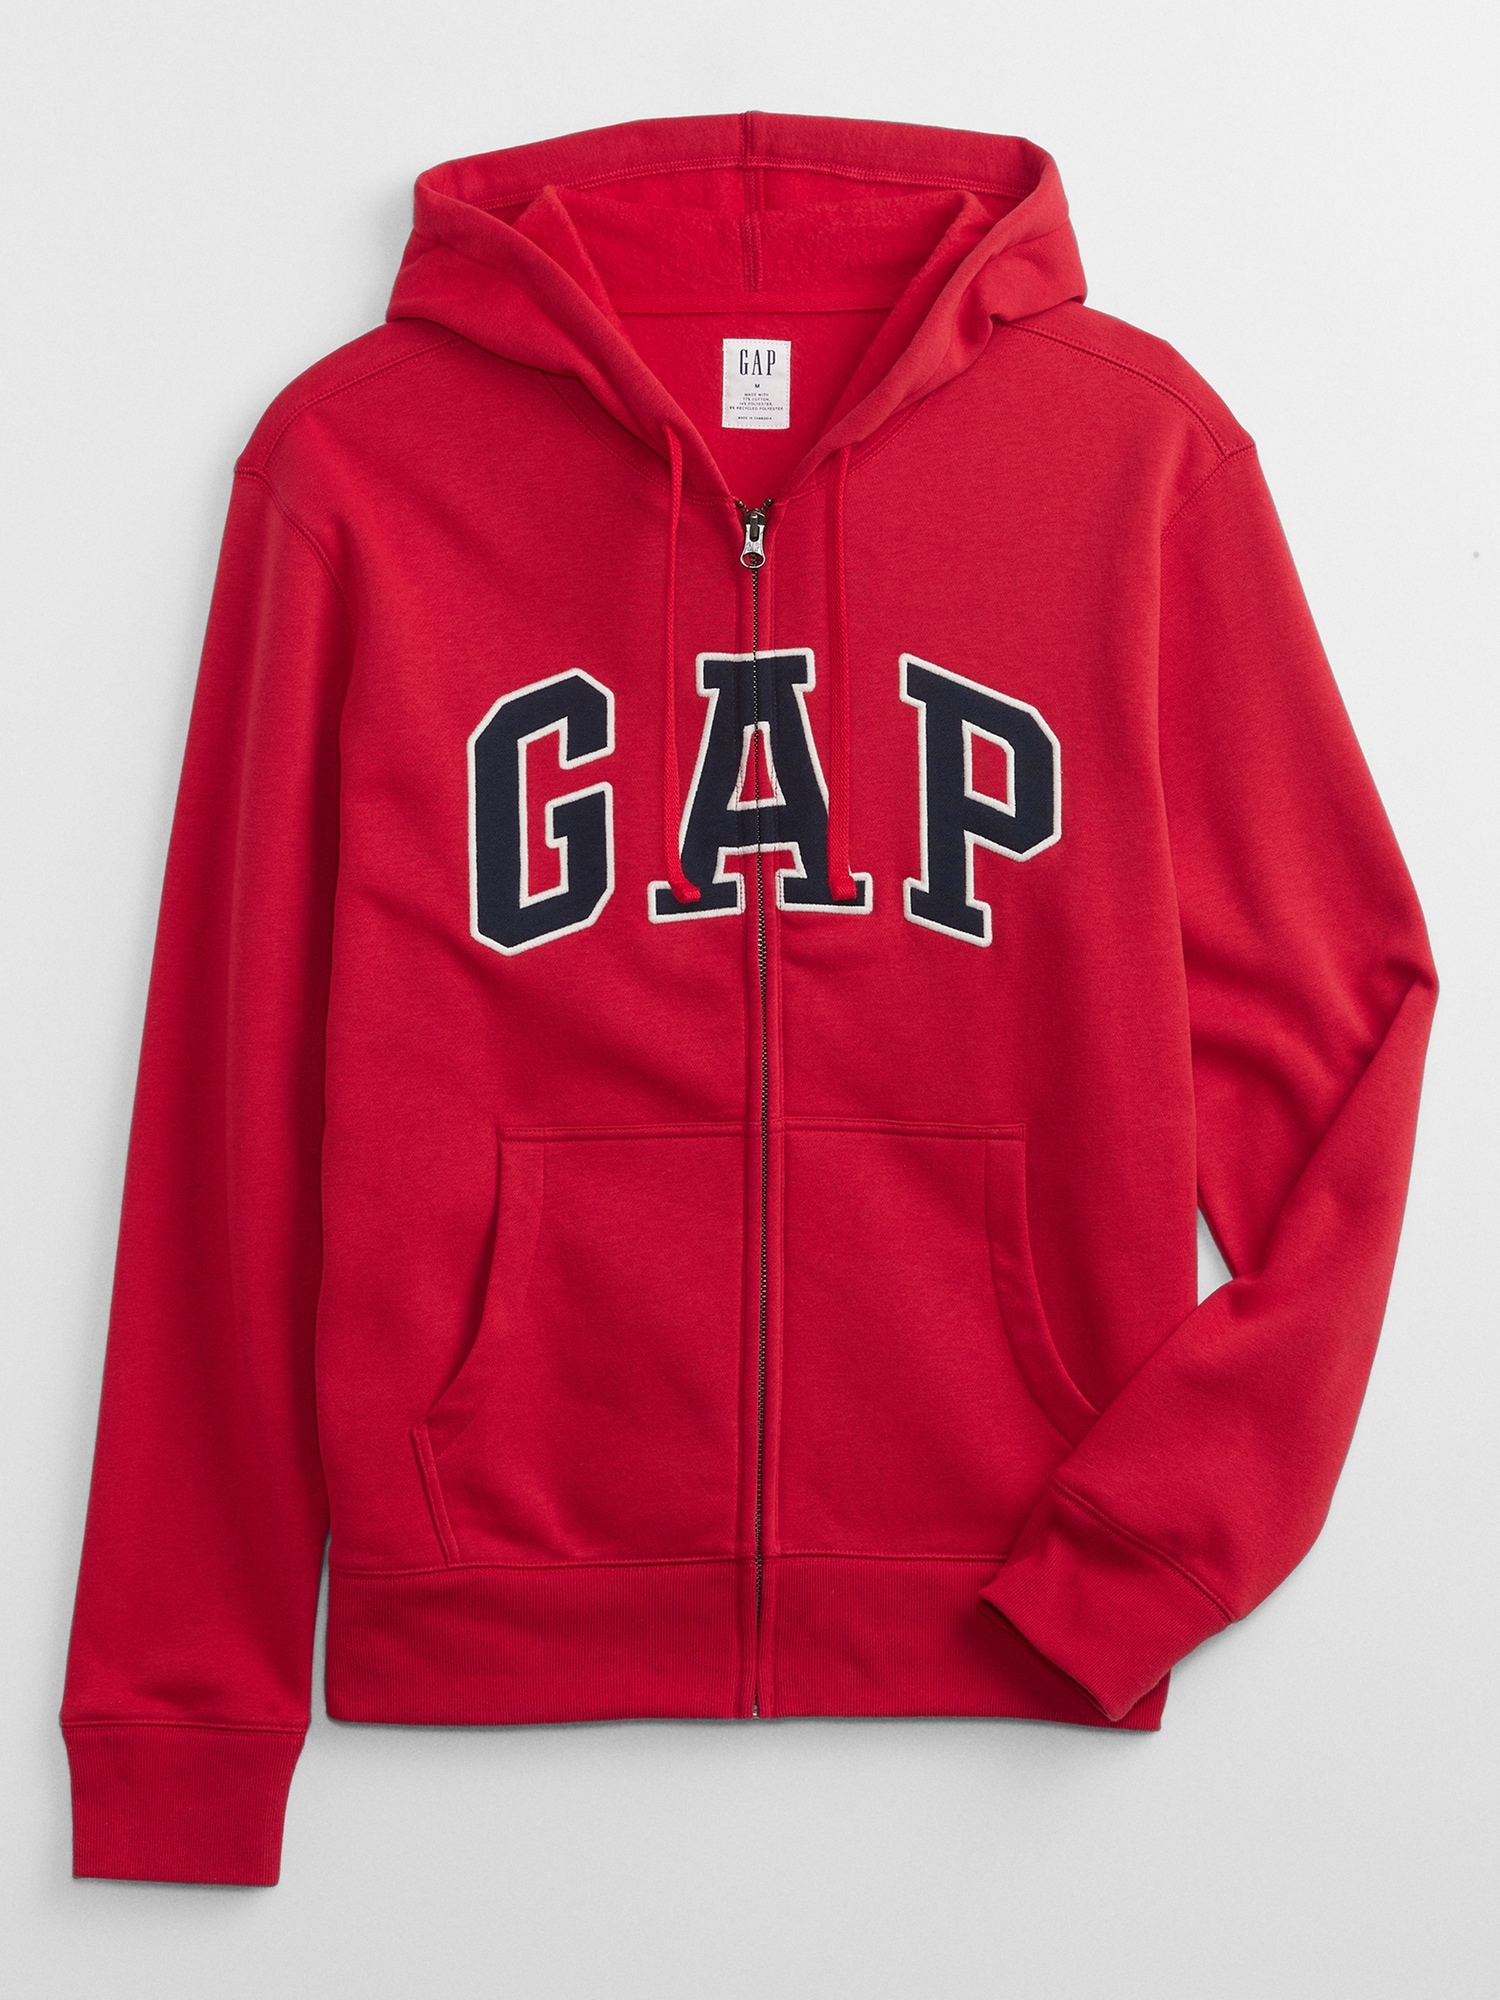 Gap Logo Hoodie Sweatshirt | Gap Factory